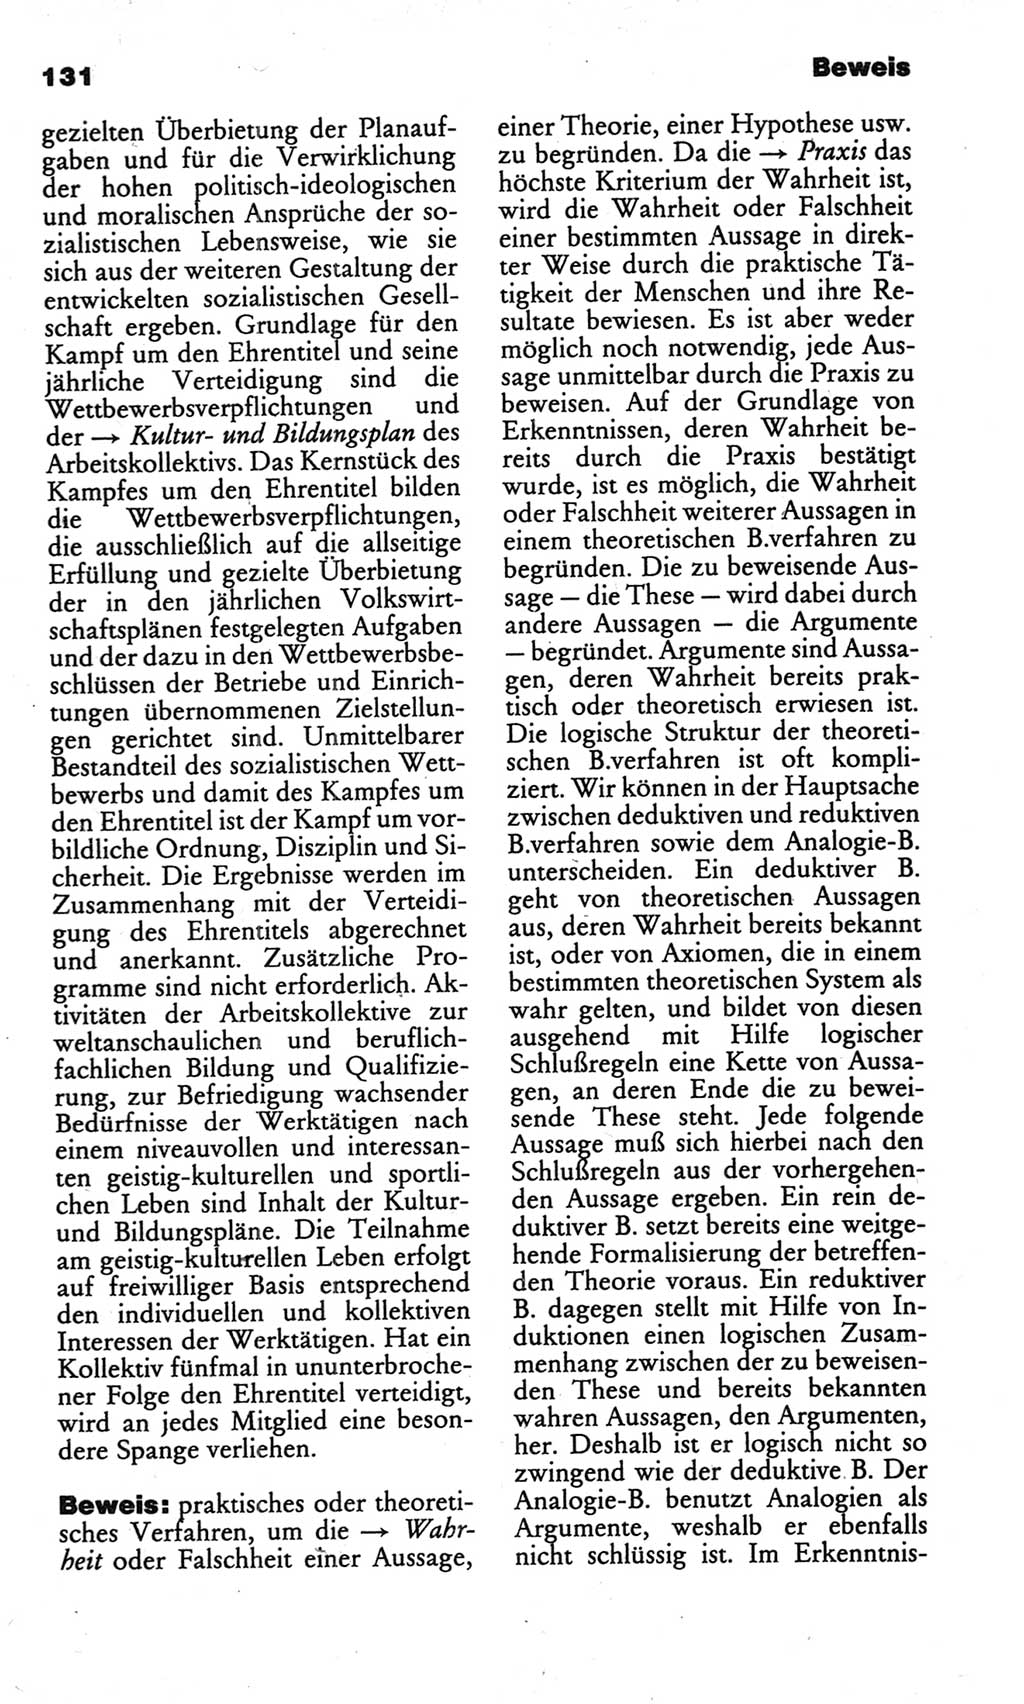 Kleines politisches Wörterbuch [Deutsche Demokratische Republik (DDR)] 1986, Seite 131 (Kl. pol. Wb. DDR 1986, S. 131)